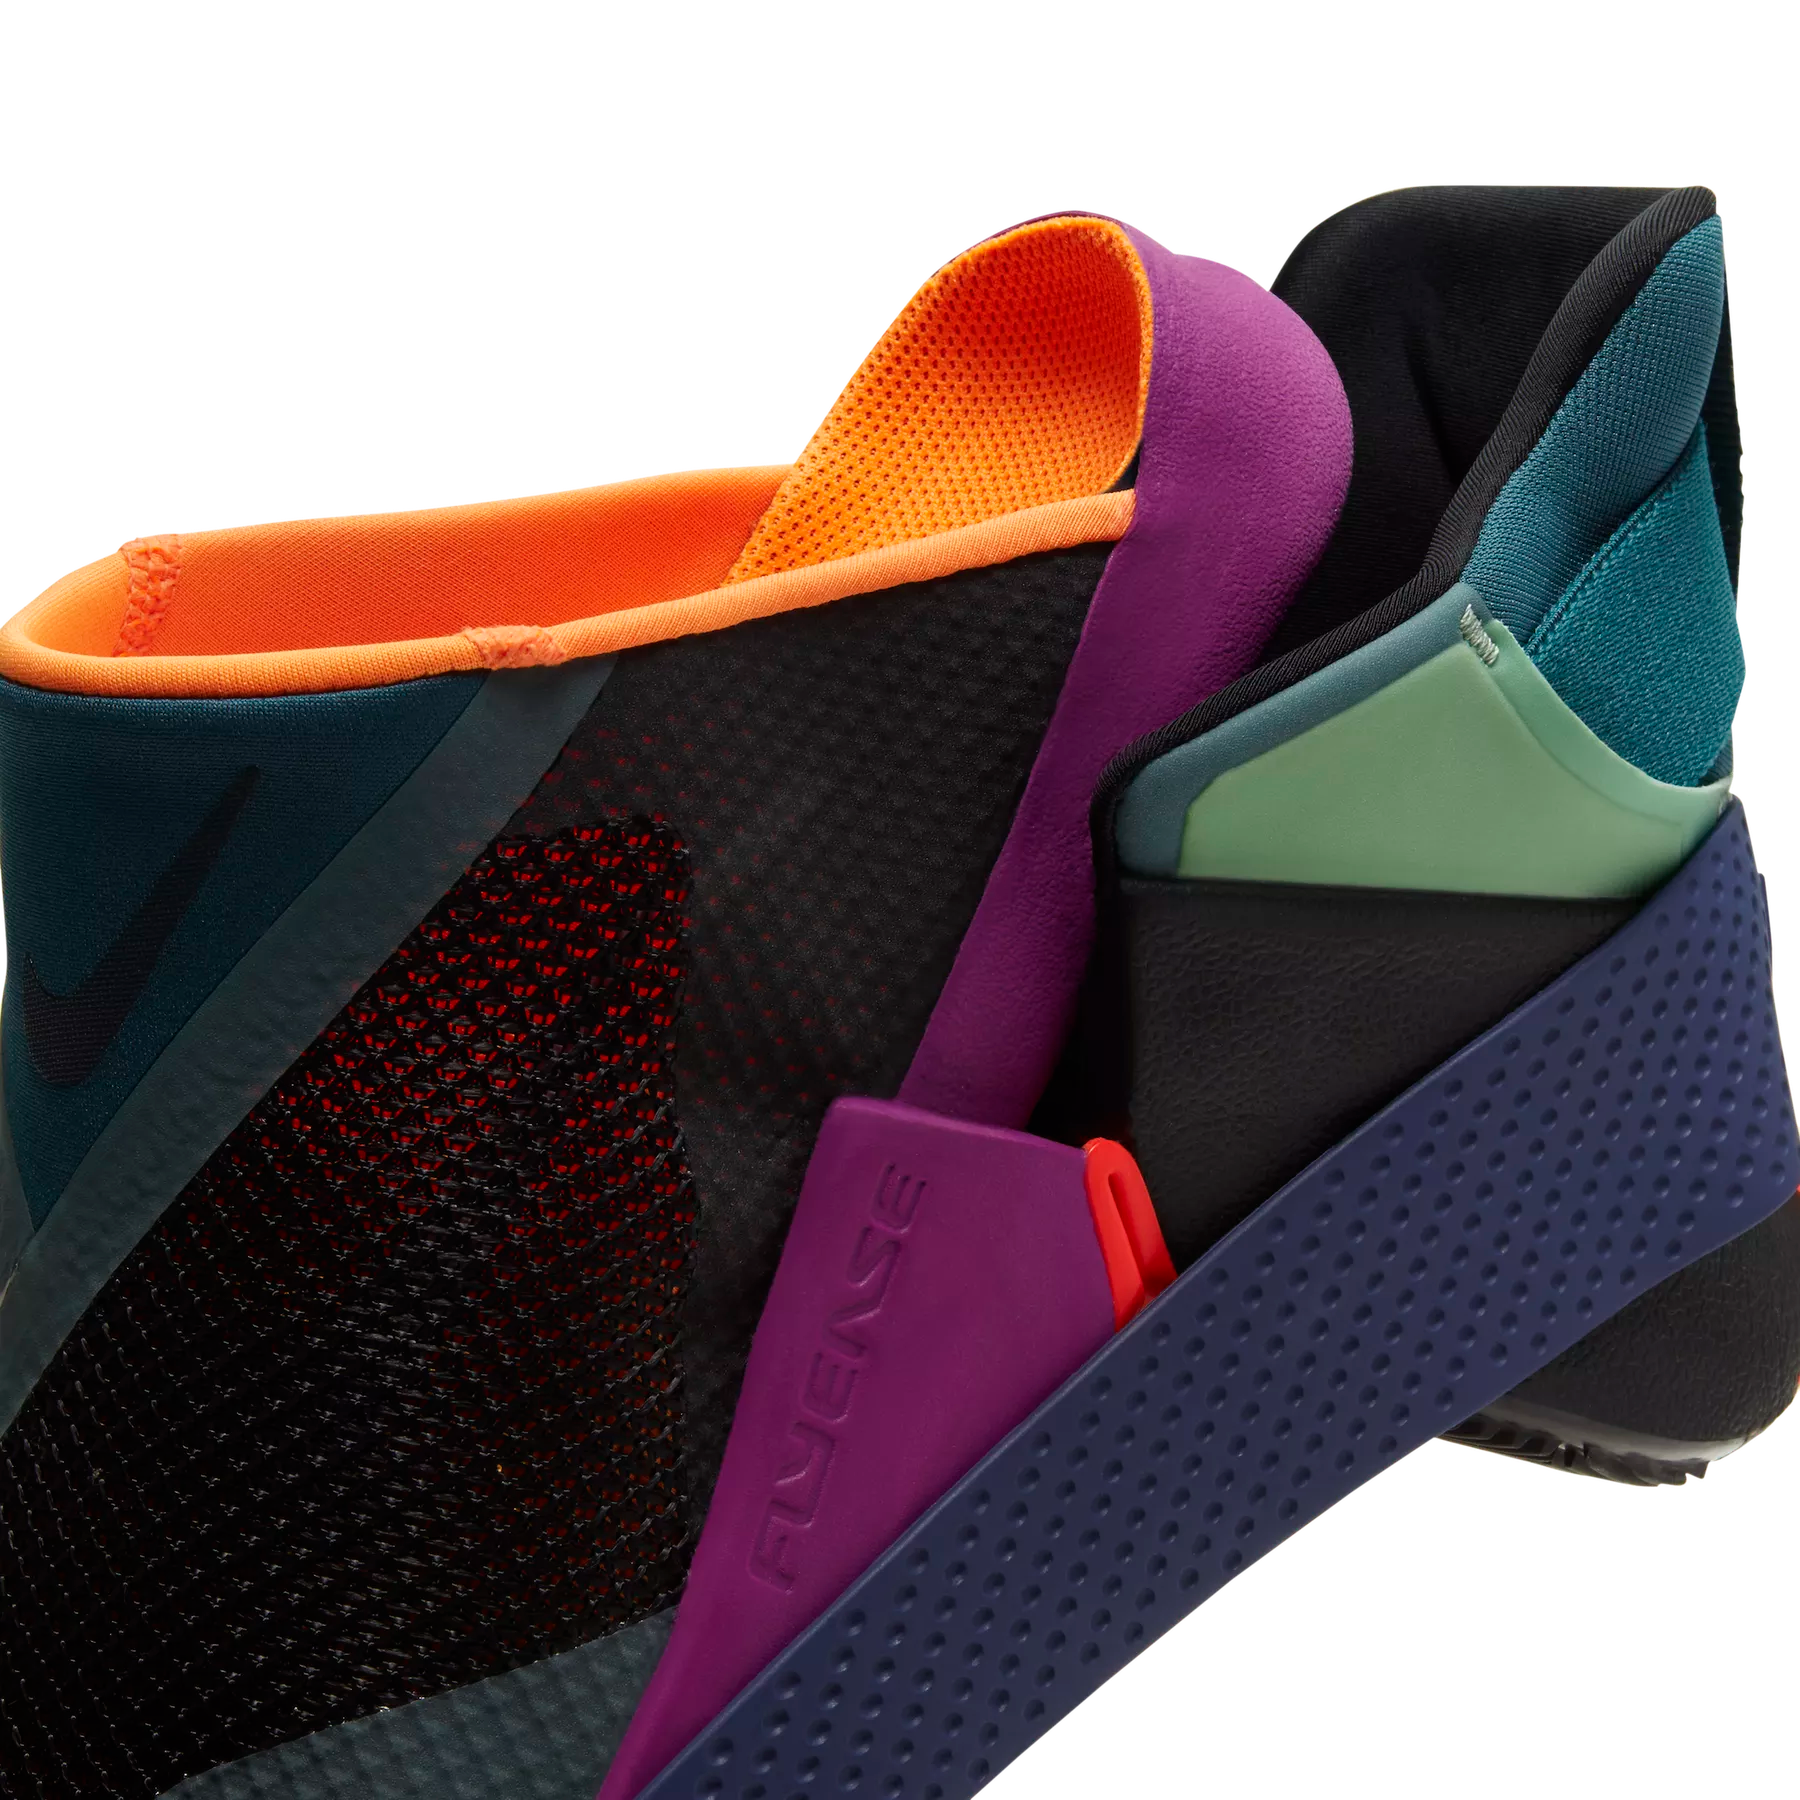 Nike Go FlyEase tanıtıldı; en rahat giyilebilen ayak giyilebilen ayakkabı